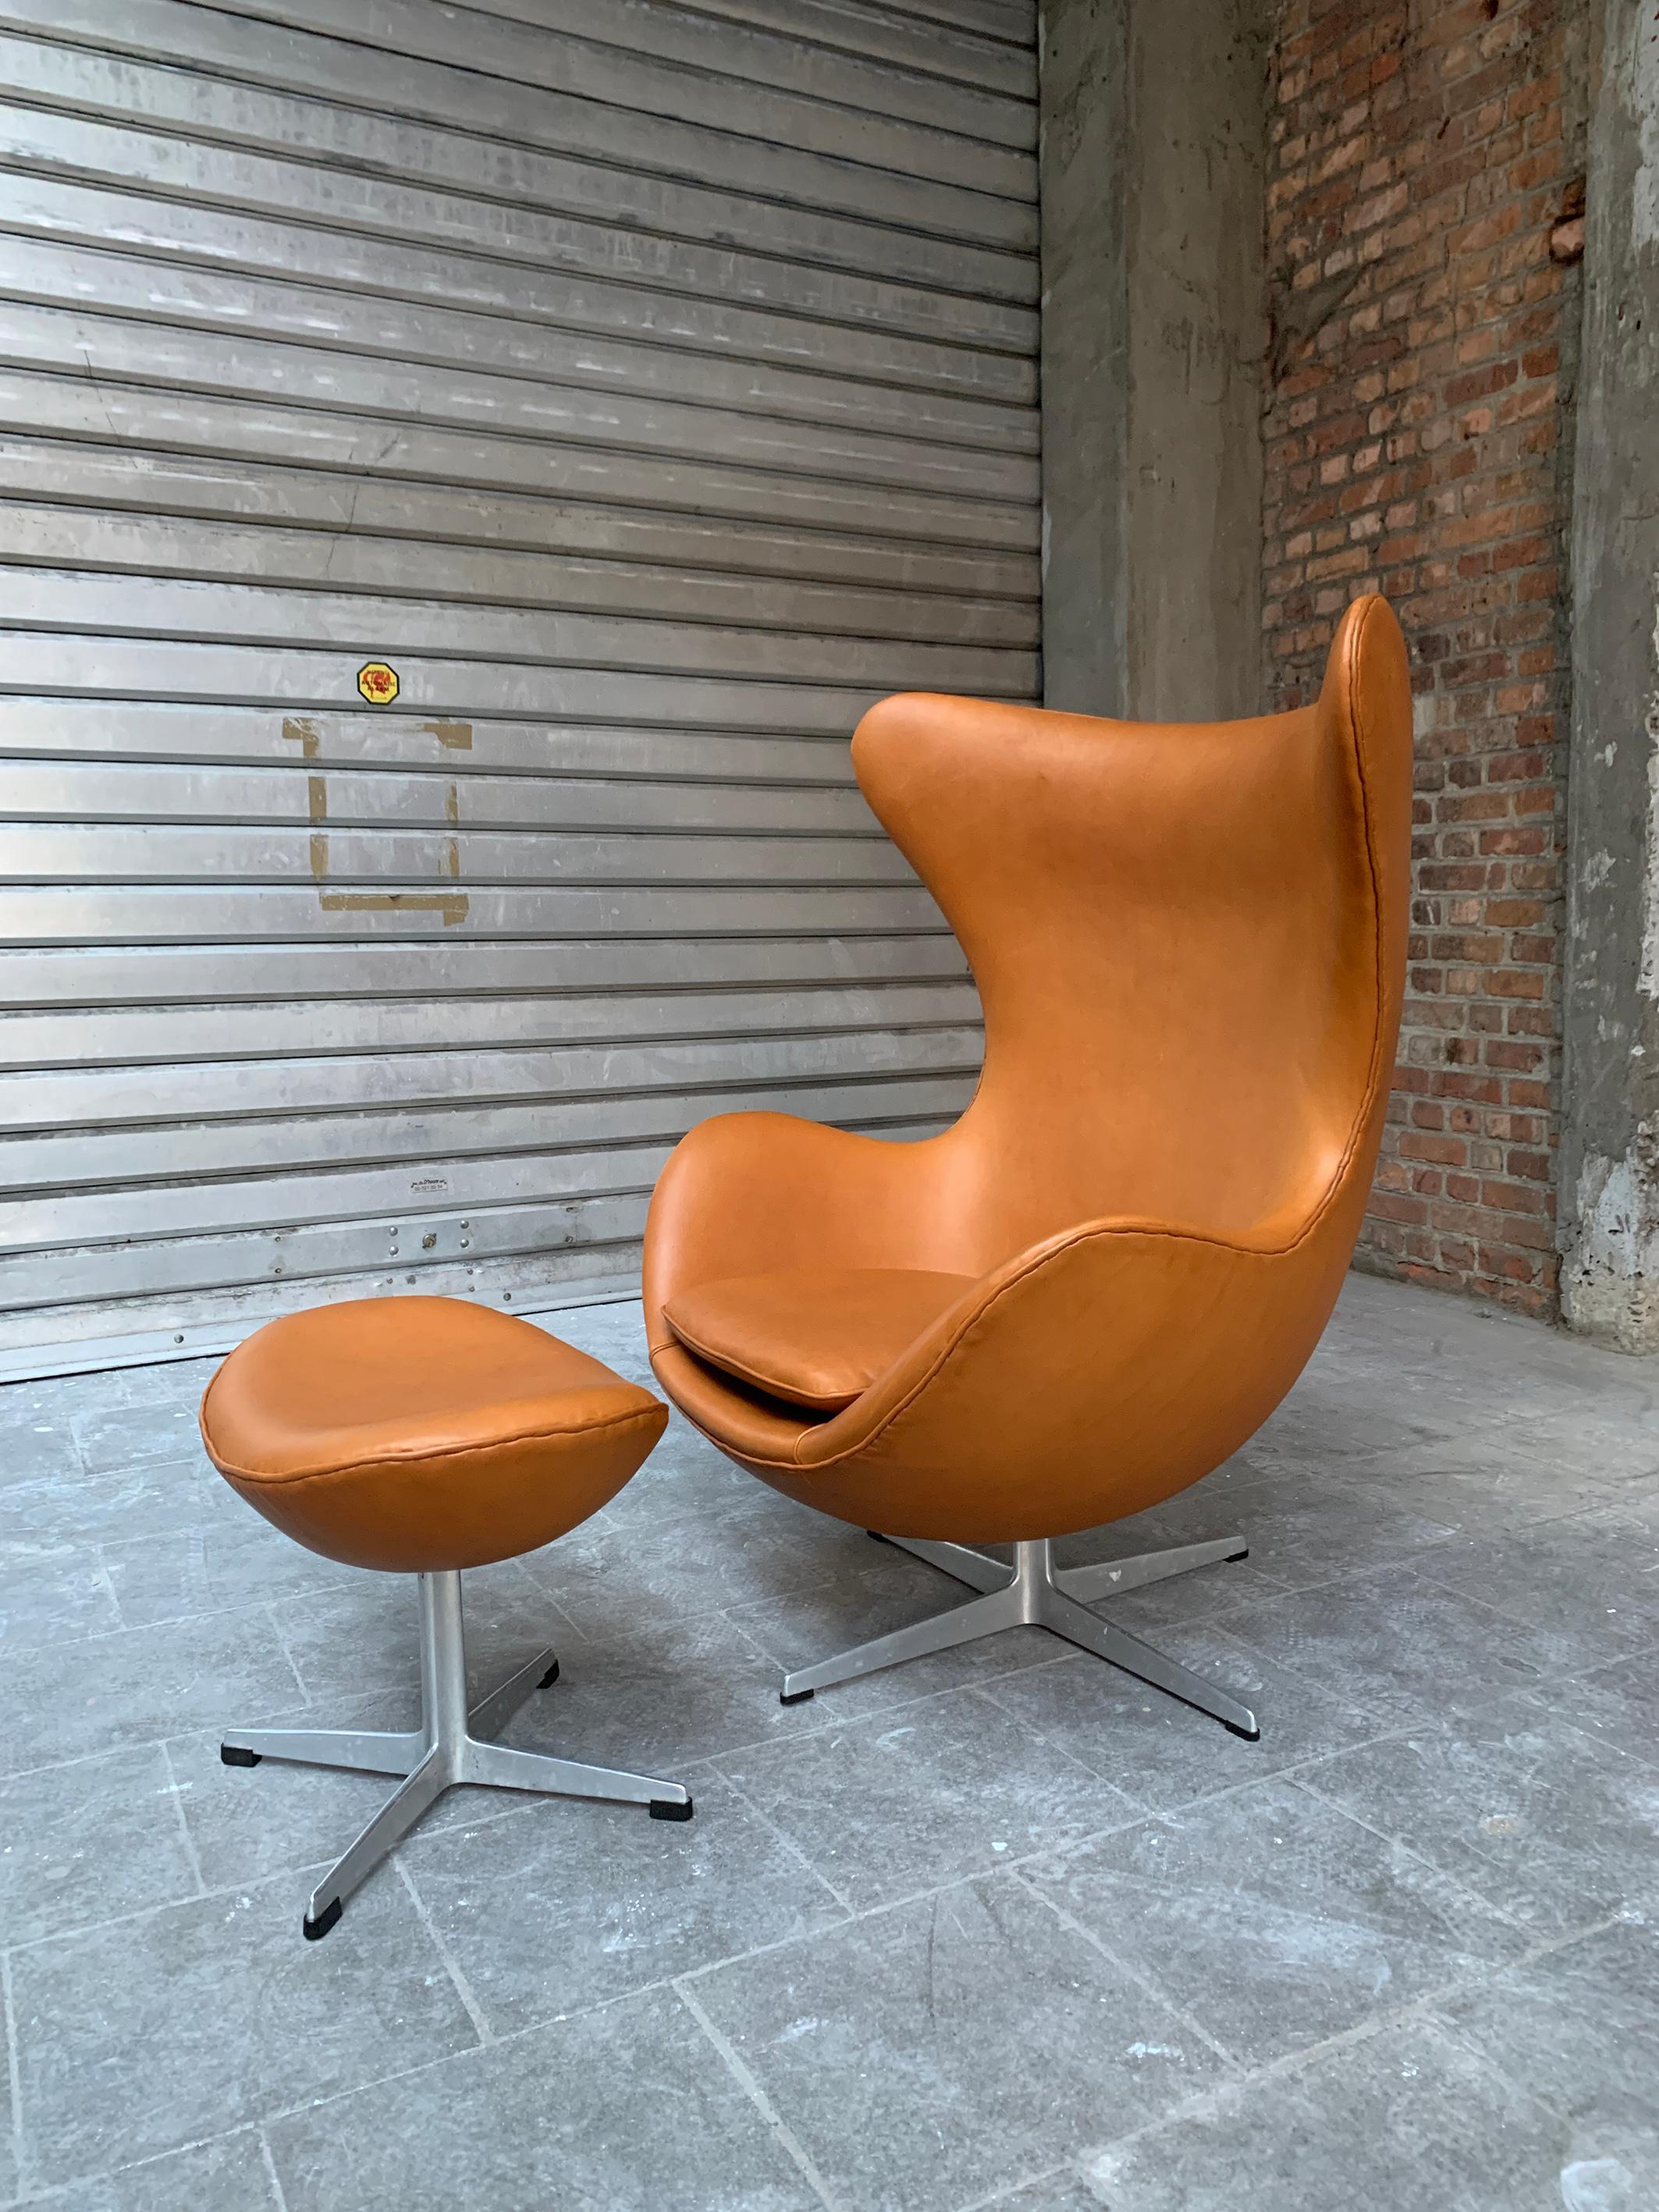 Eine absolute Design-Ikone, der Egg-Stuhl von Arne Jacobsen mit seinem Fußhocker aus dem Jahr 1966. 

Neu gepolstert mit europäischem Nappaleder unter Verwendung der Originaltechniken. Das bedeutet, dass die Lederkeder rund um den Stuhl und die